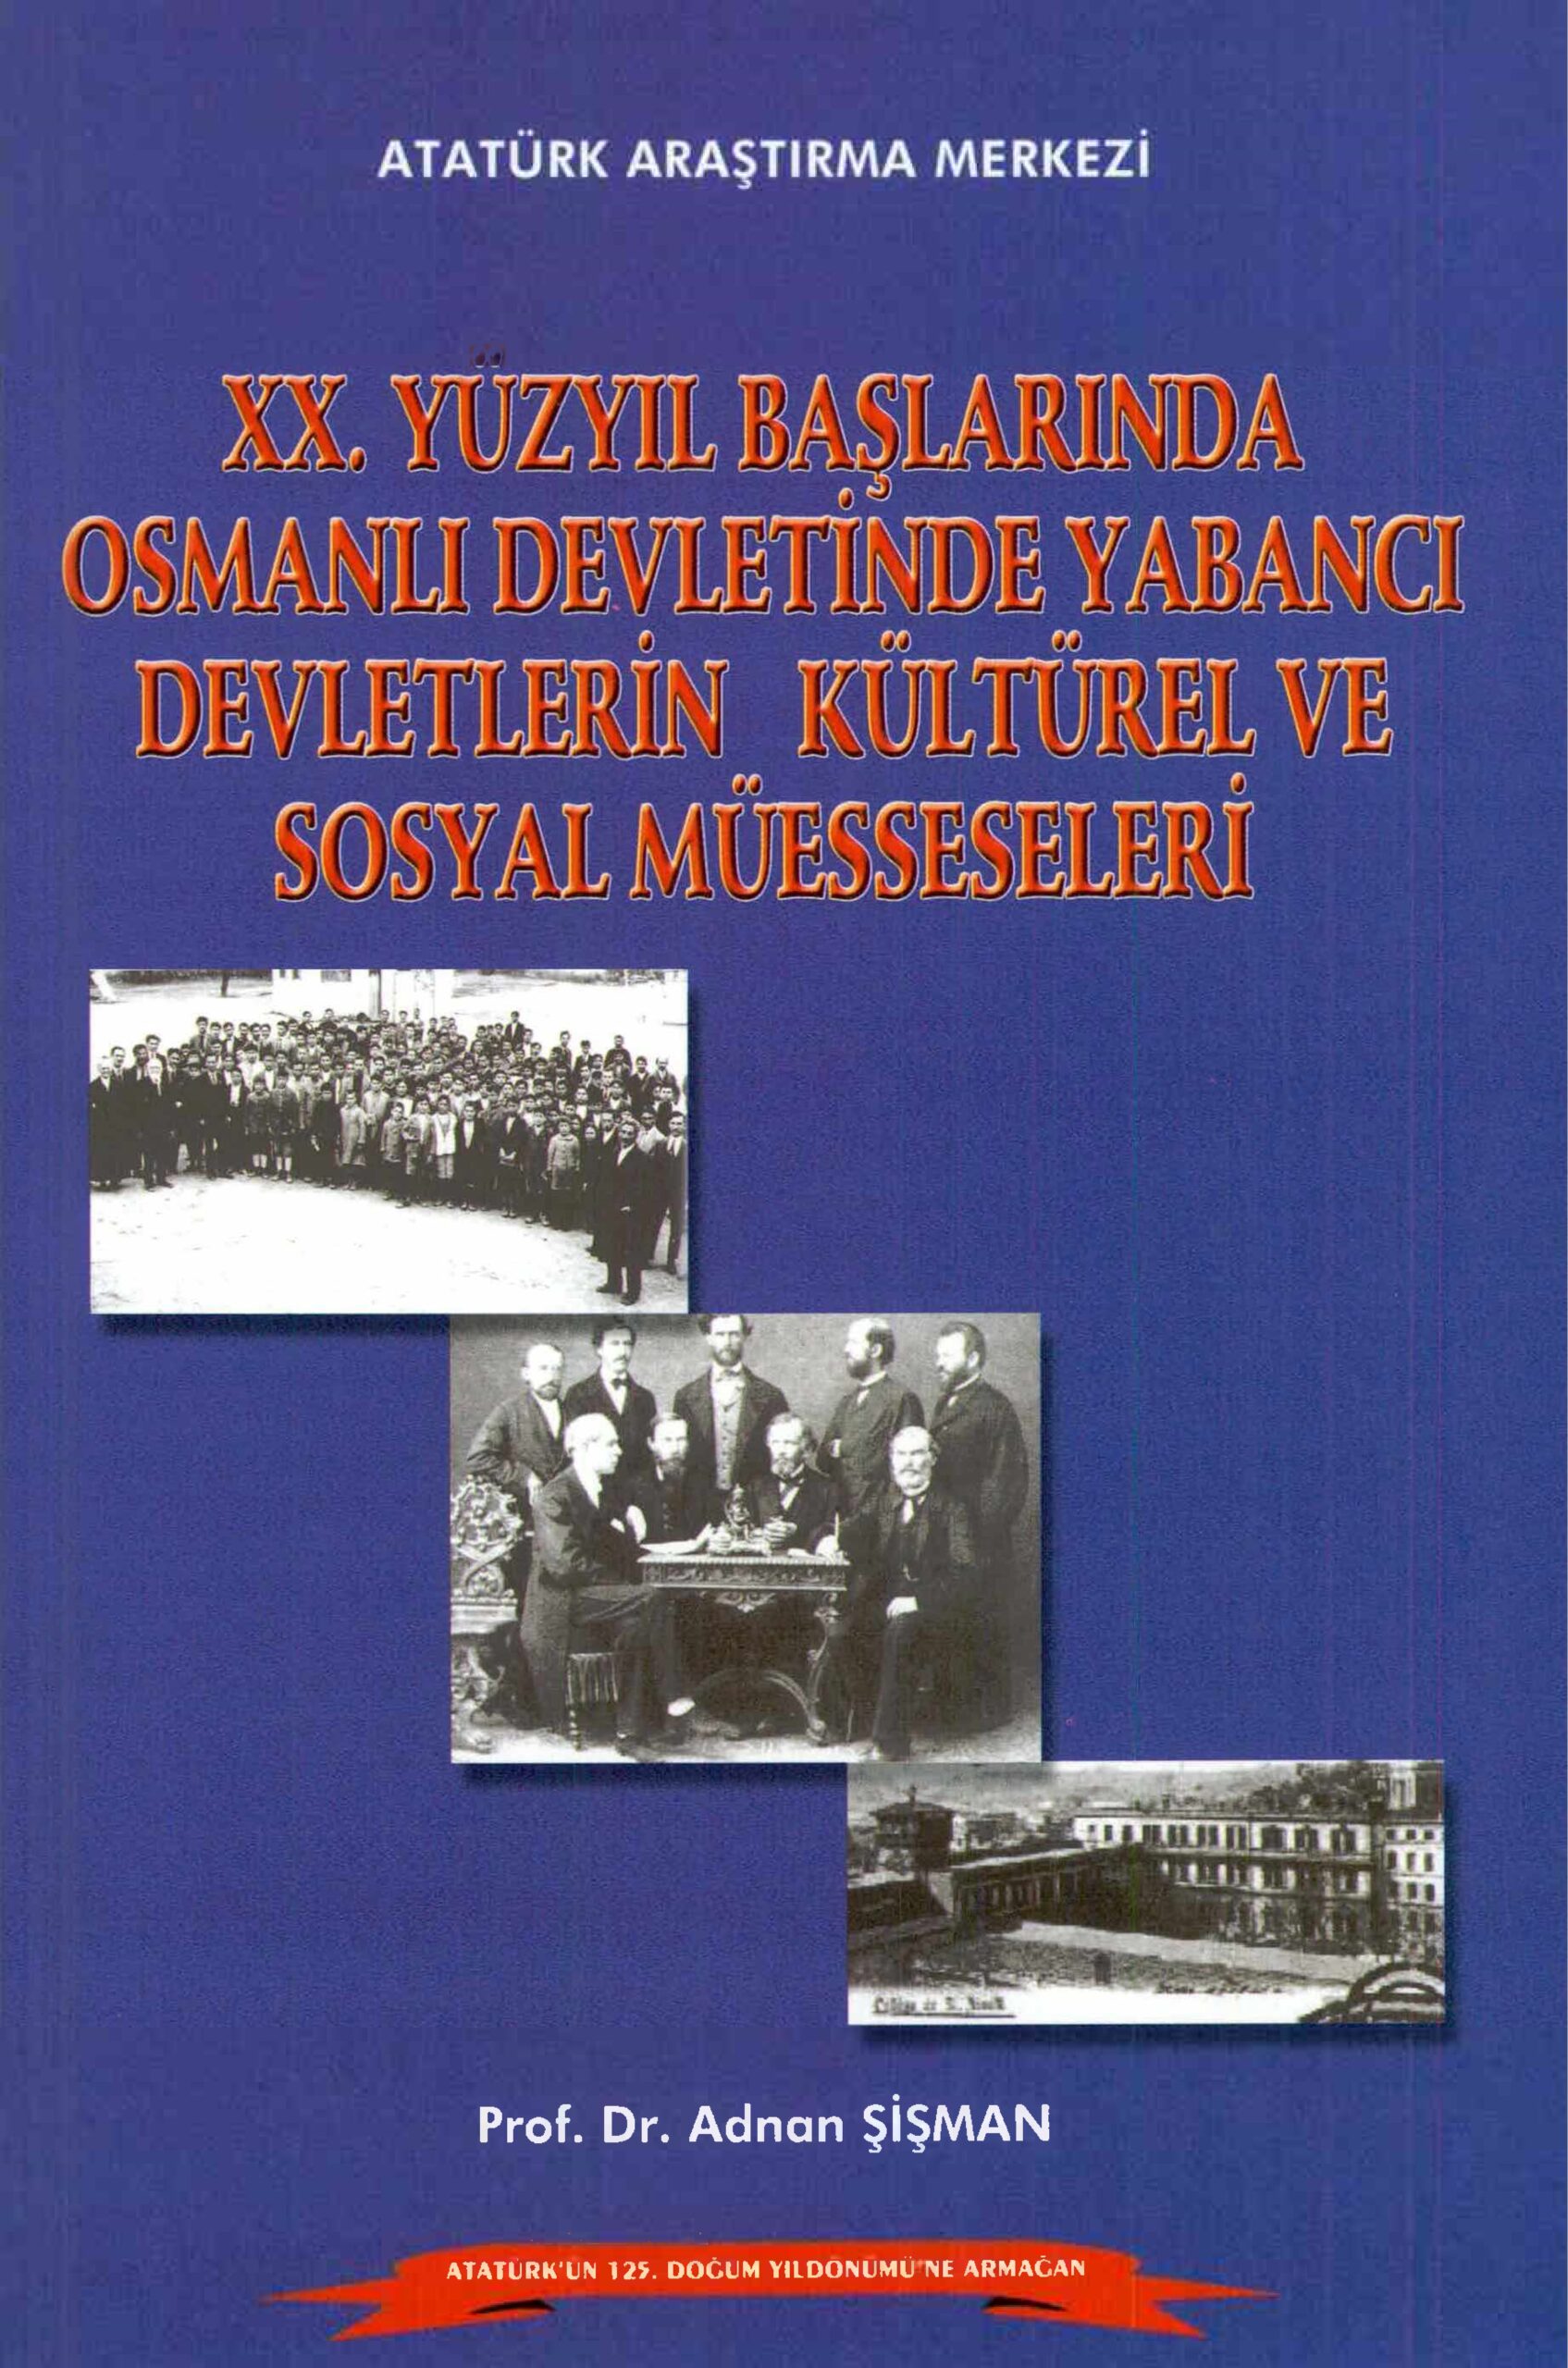 XX. Yüzyıl Başlarında Osmanlı Devletinde Yabancı Devletlerin Kültürel ve Sosyal Müesseseleri